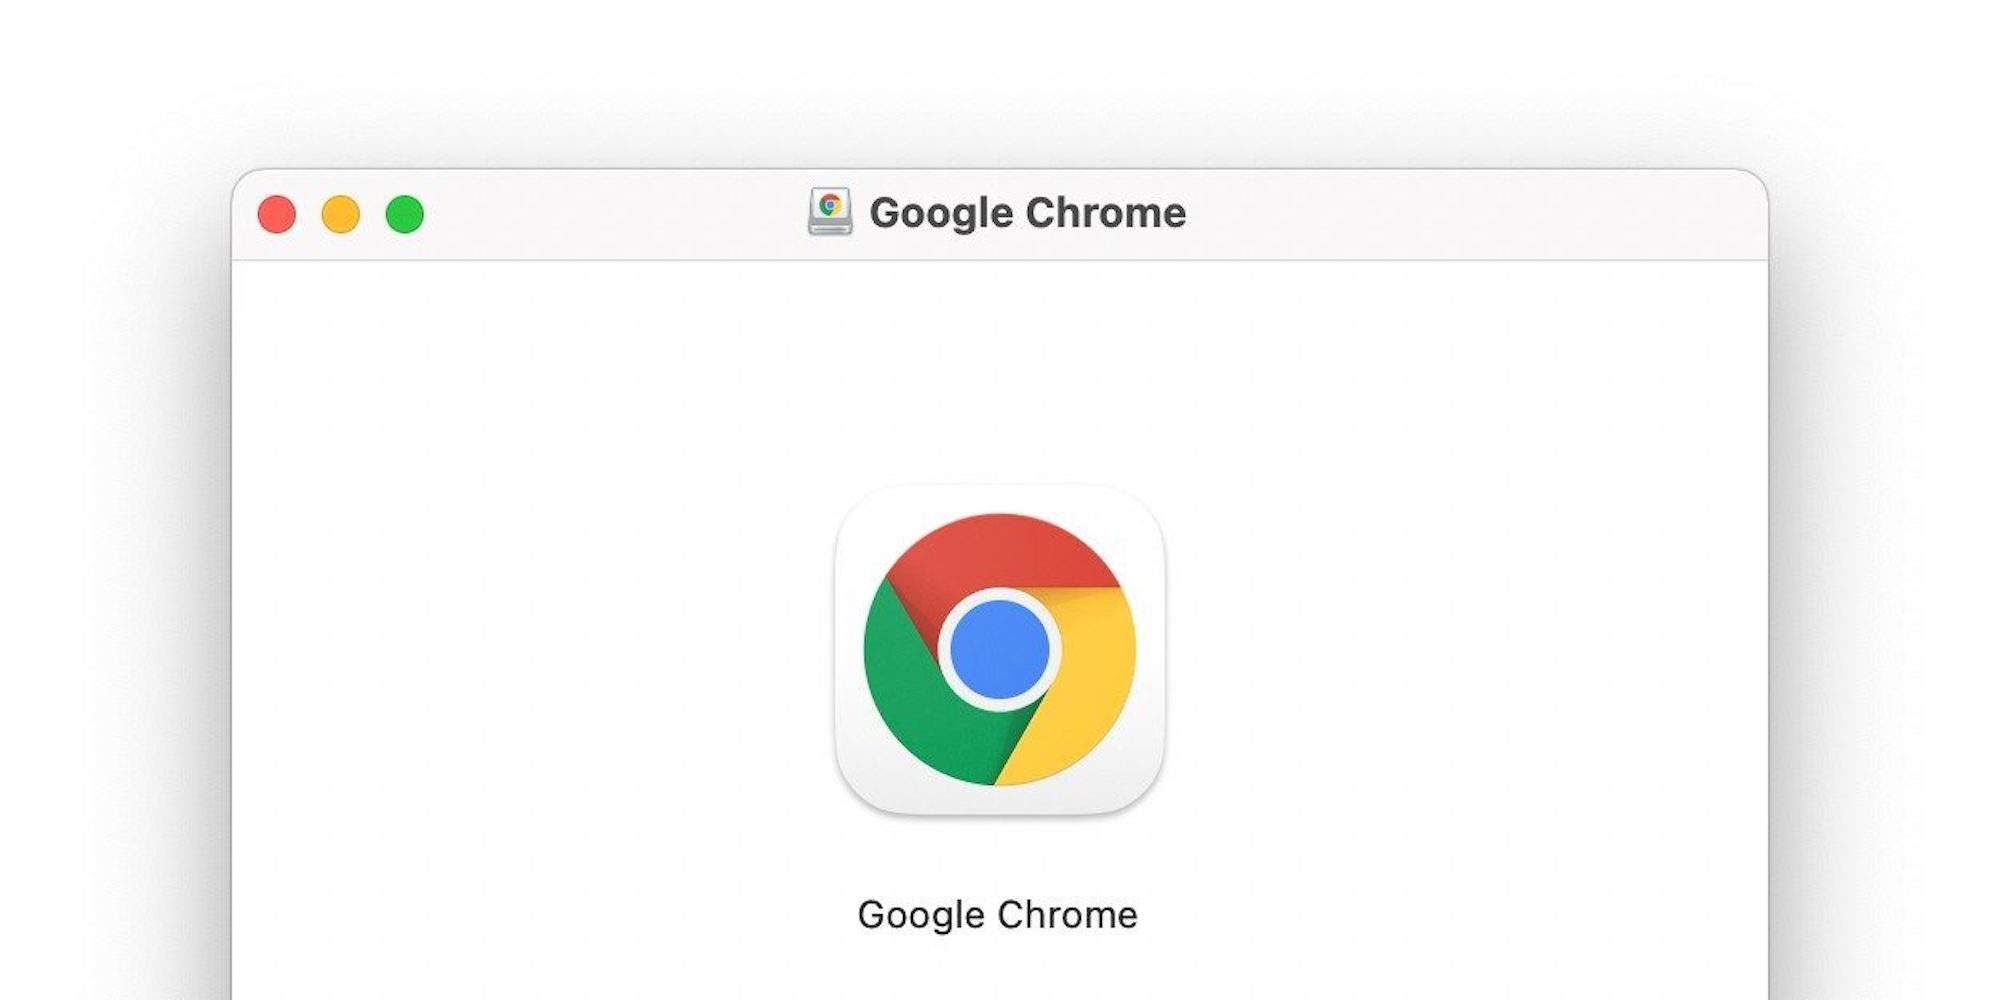 get google chrome for mac